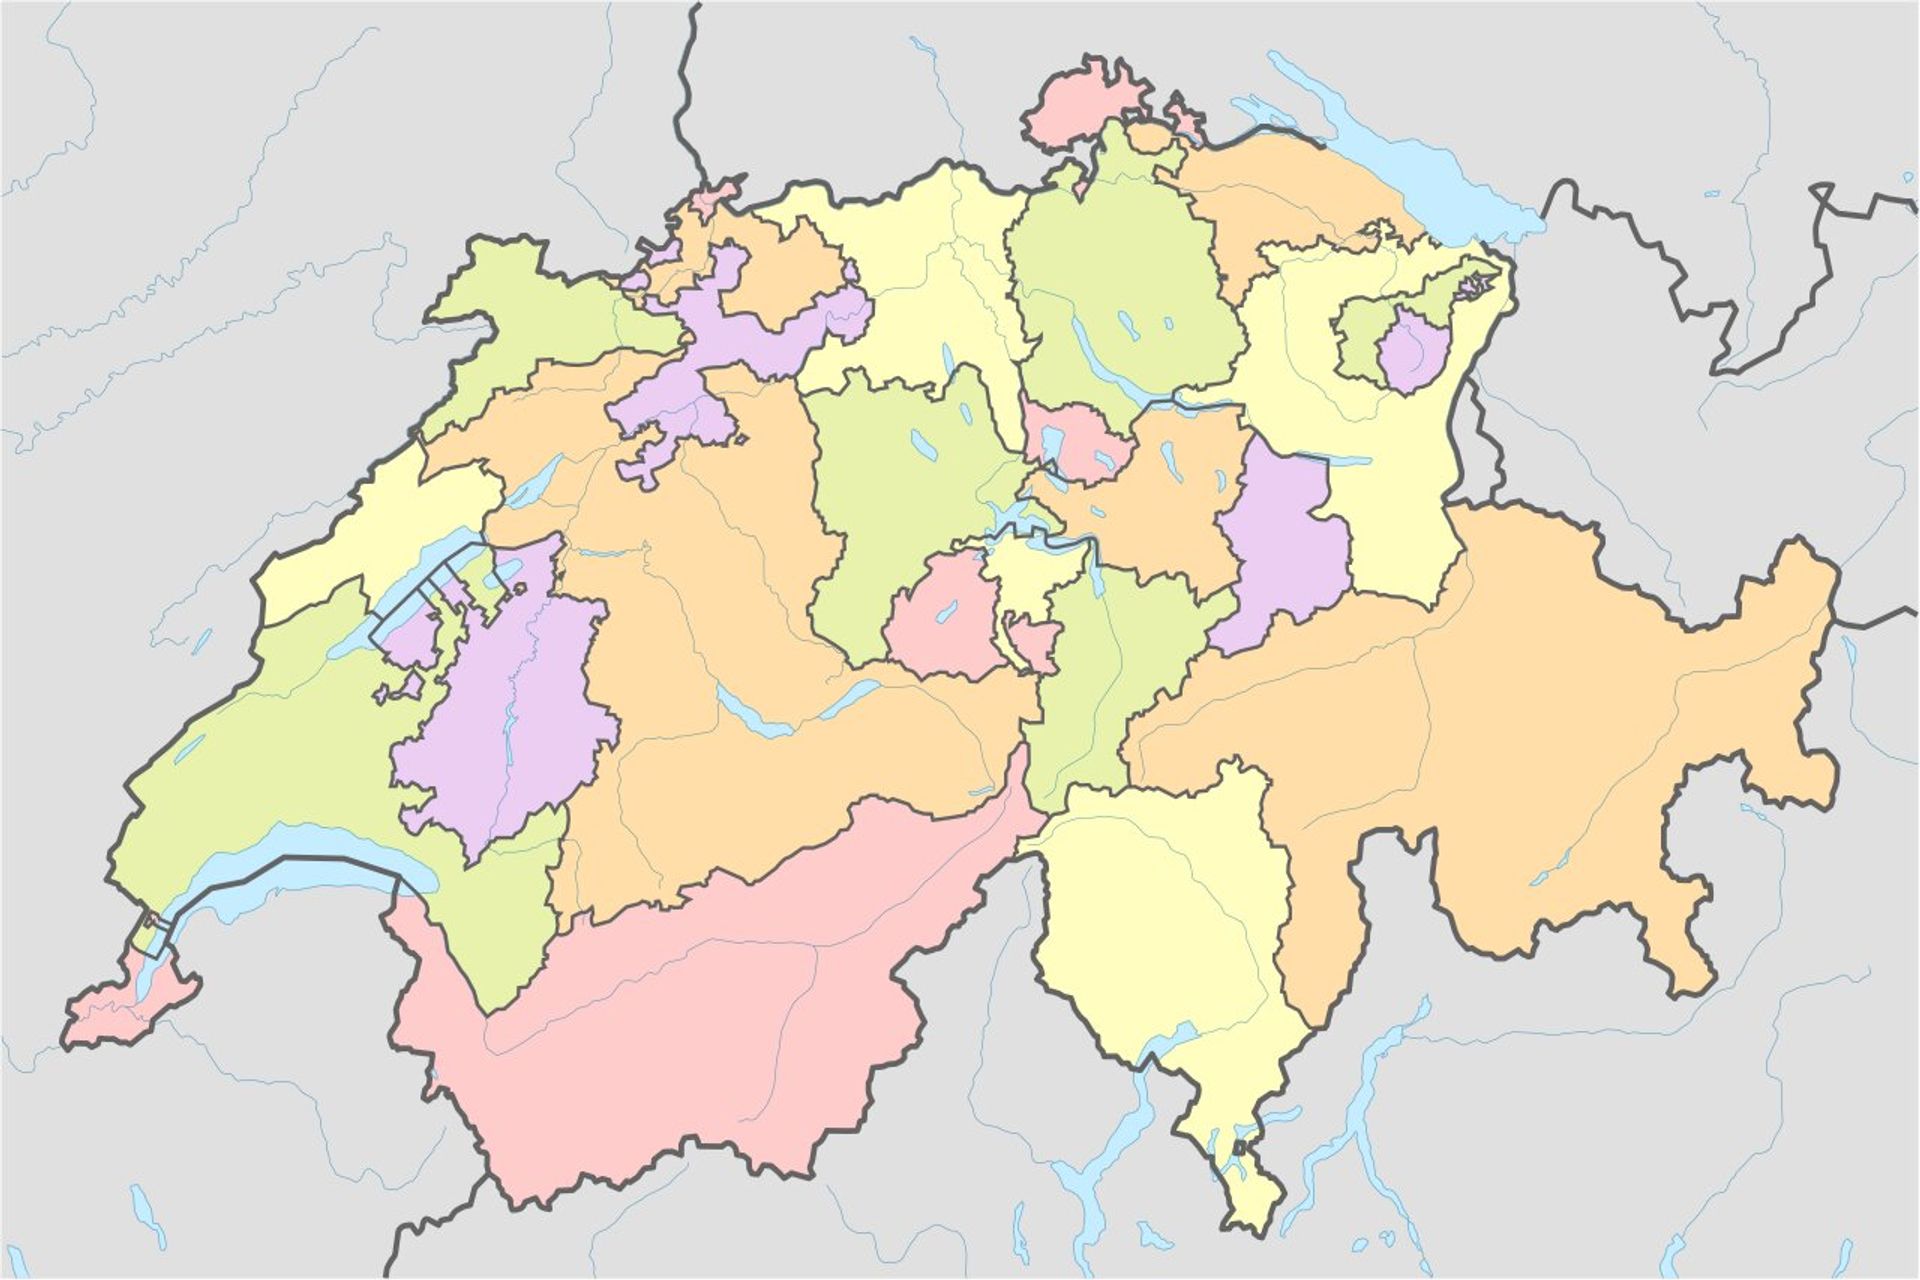 İsviçre Konfederasyonunun 26 kantonu arasındaki idari sınırlar